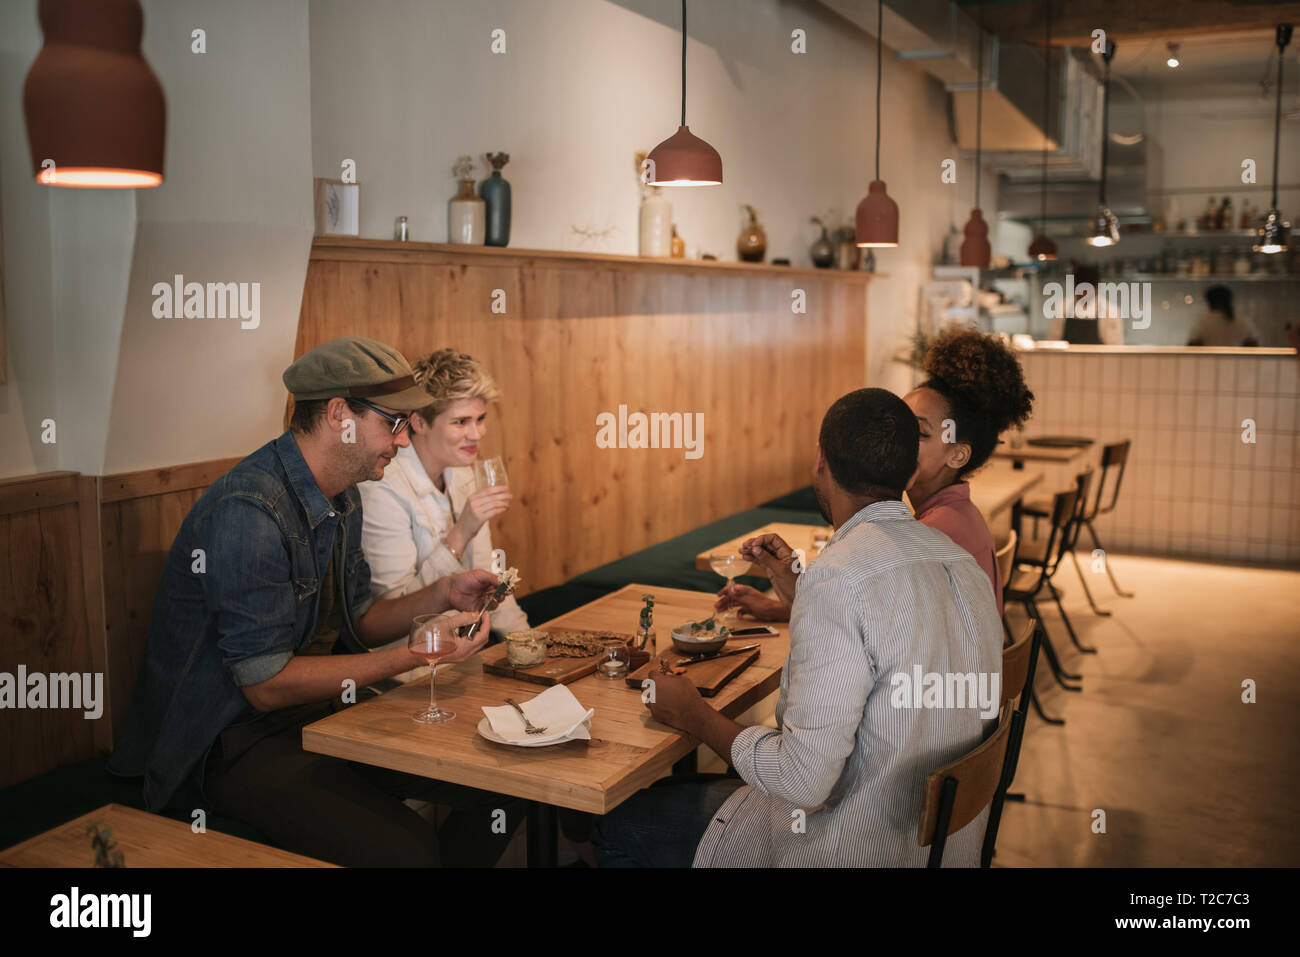 Groupe diversifié de smiling young friends le partage de nourriture tout en restant assis ensemble à une table dans un bar branché Banque D'Images